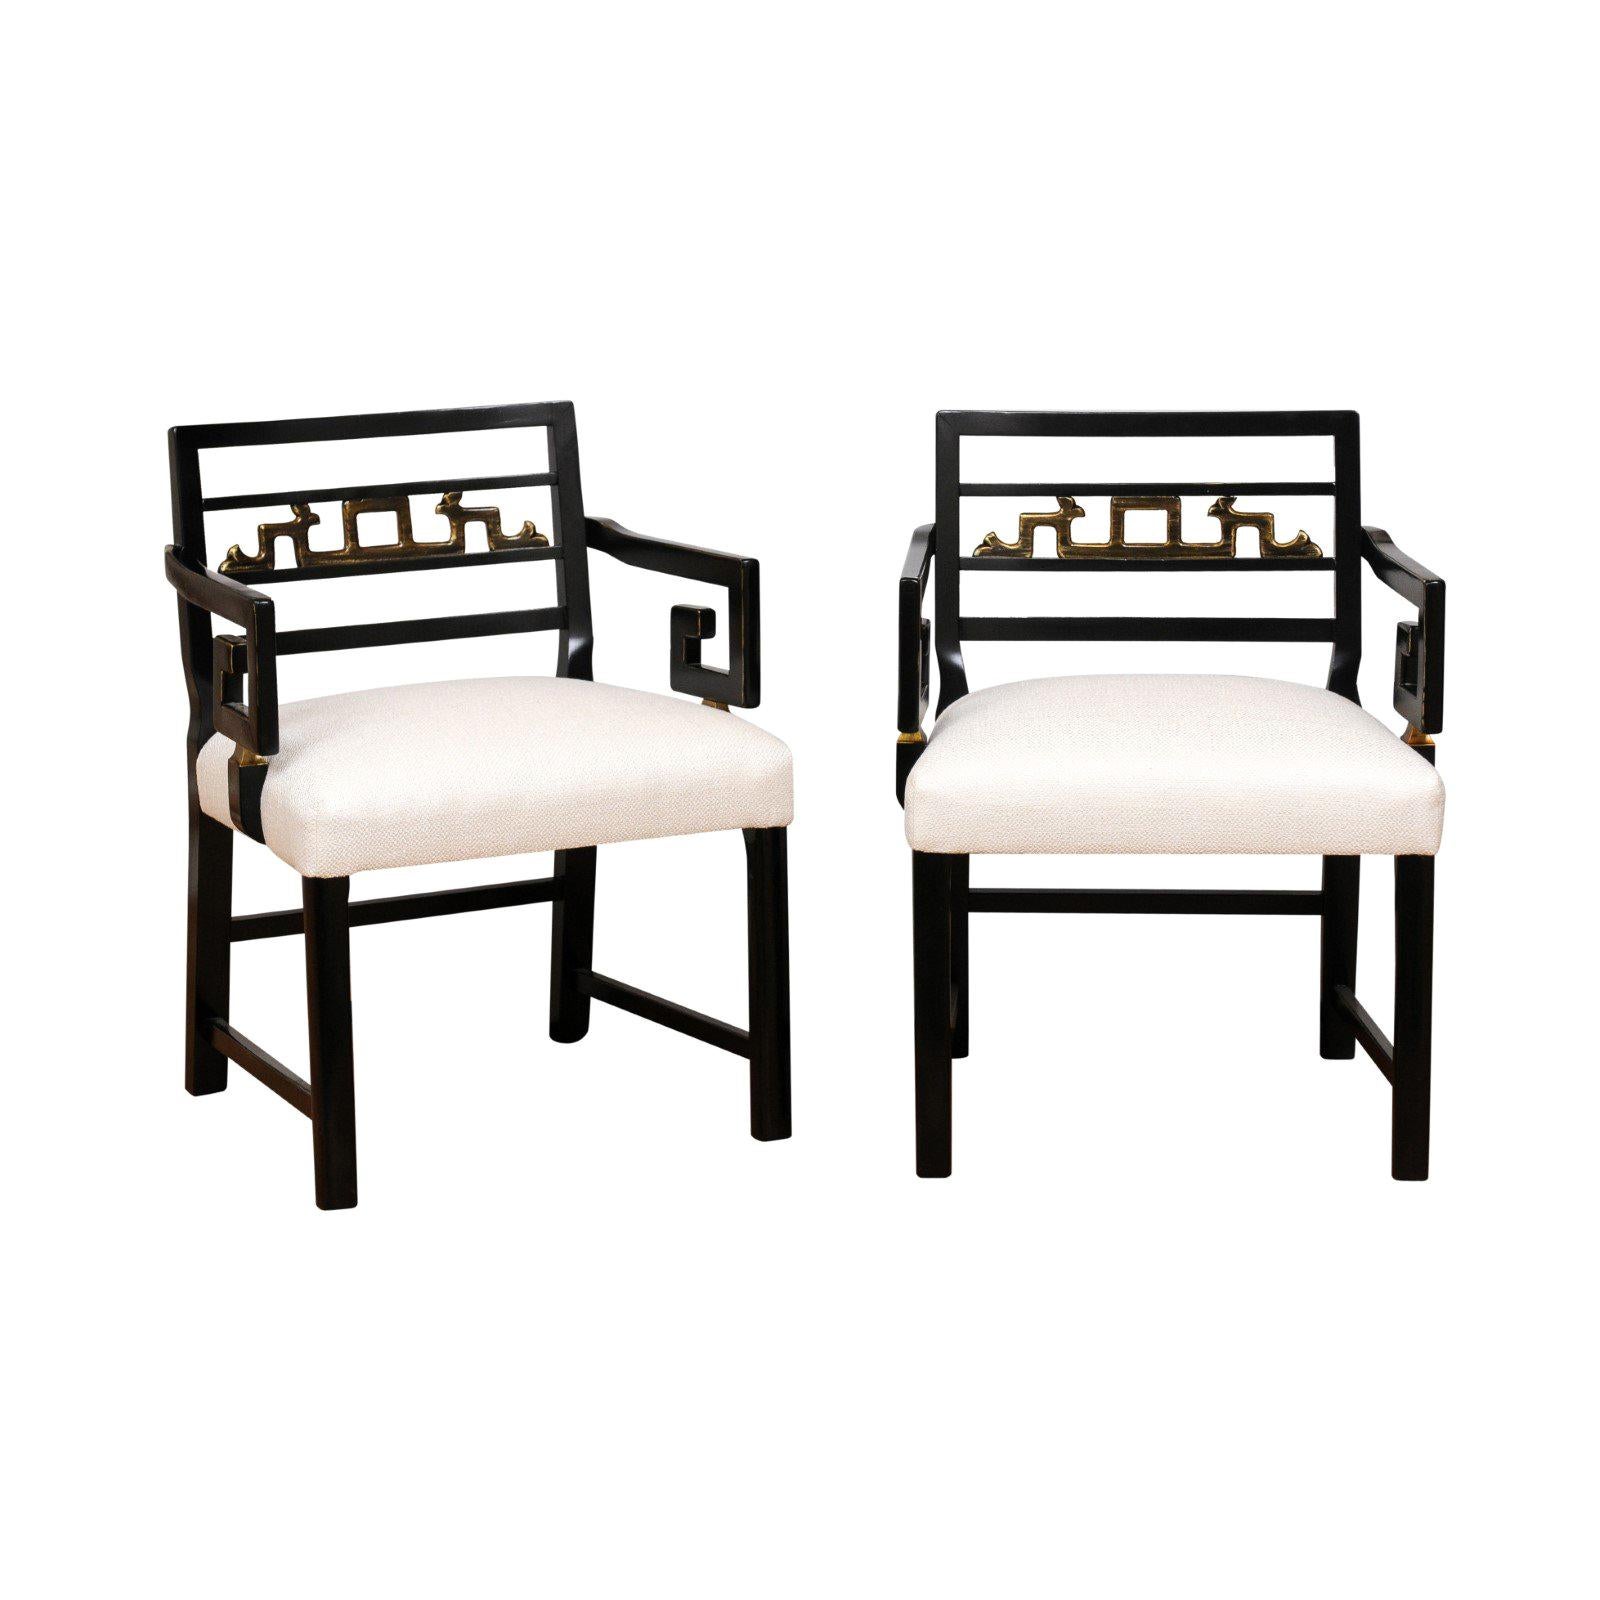 Magnifique paire de fauteuils modernes de style Chinoiserie avec motif de clé grecque par Baker, vers 1960